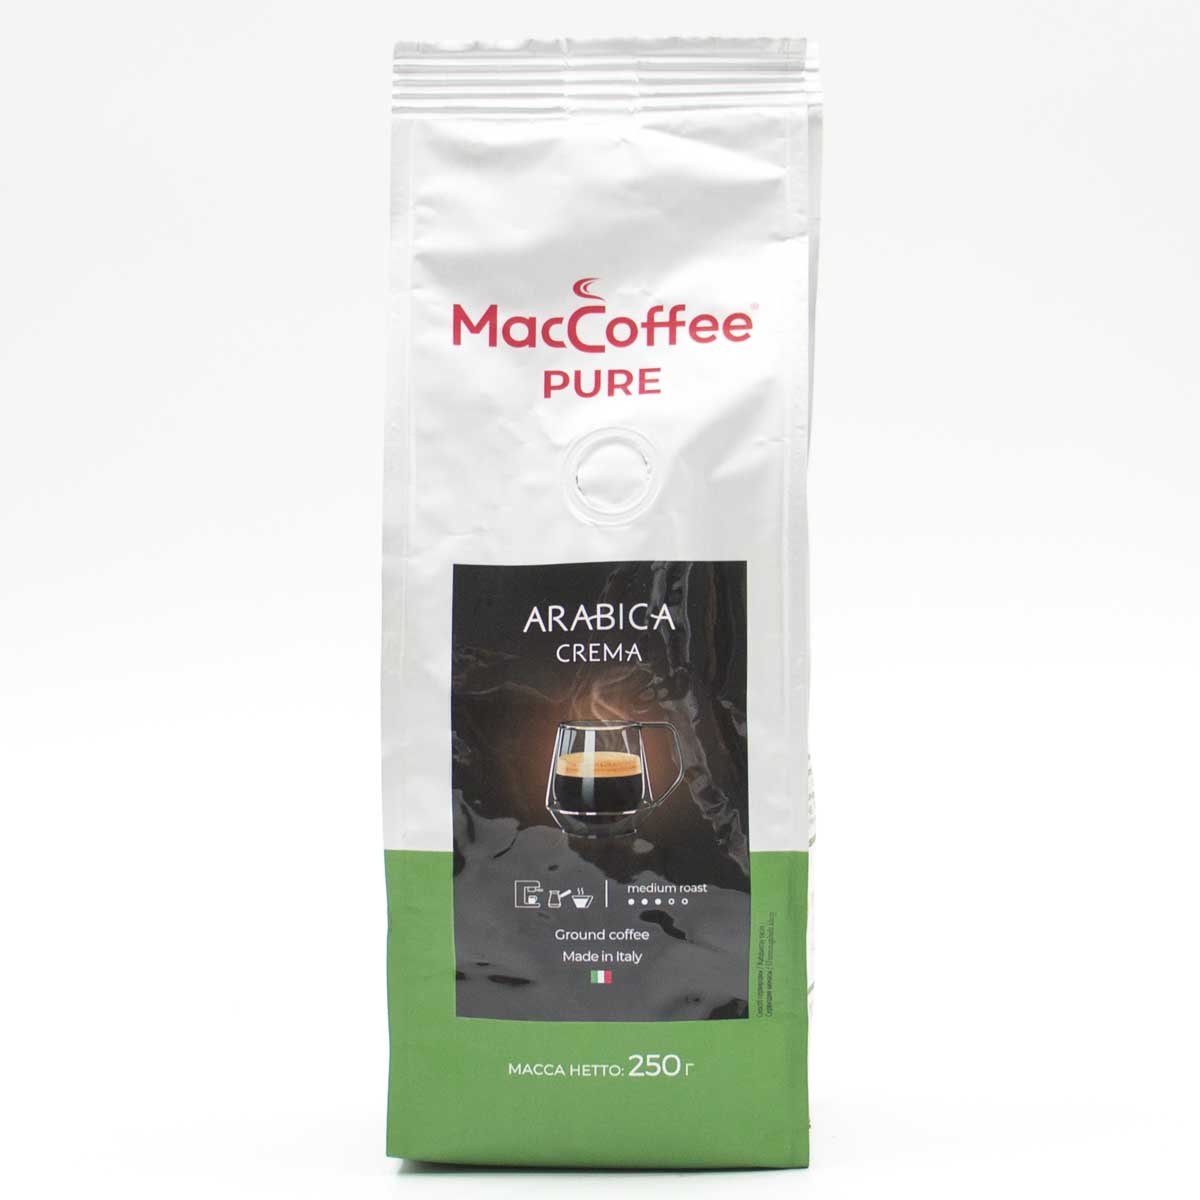 Кофе maccoffee pure. Кофе Маккофе Пьюр Арабика крема 250г зерно. Маккофе Пьюр Арабика крема 1 кг. MACCOFFEE зерновой. Кофе жареный натуральный в зернах пуре Арабика крема Маккофе 250гр.